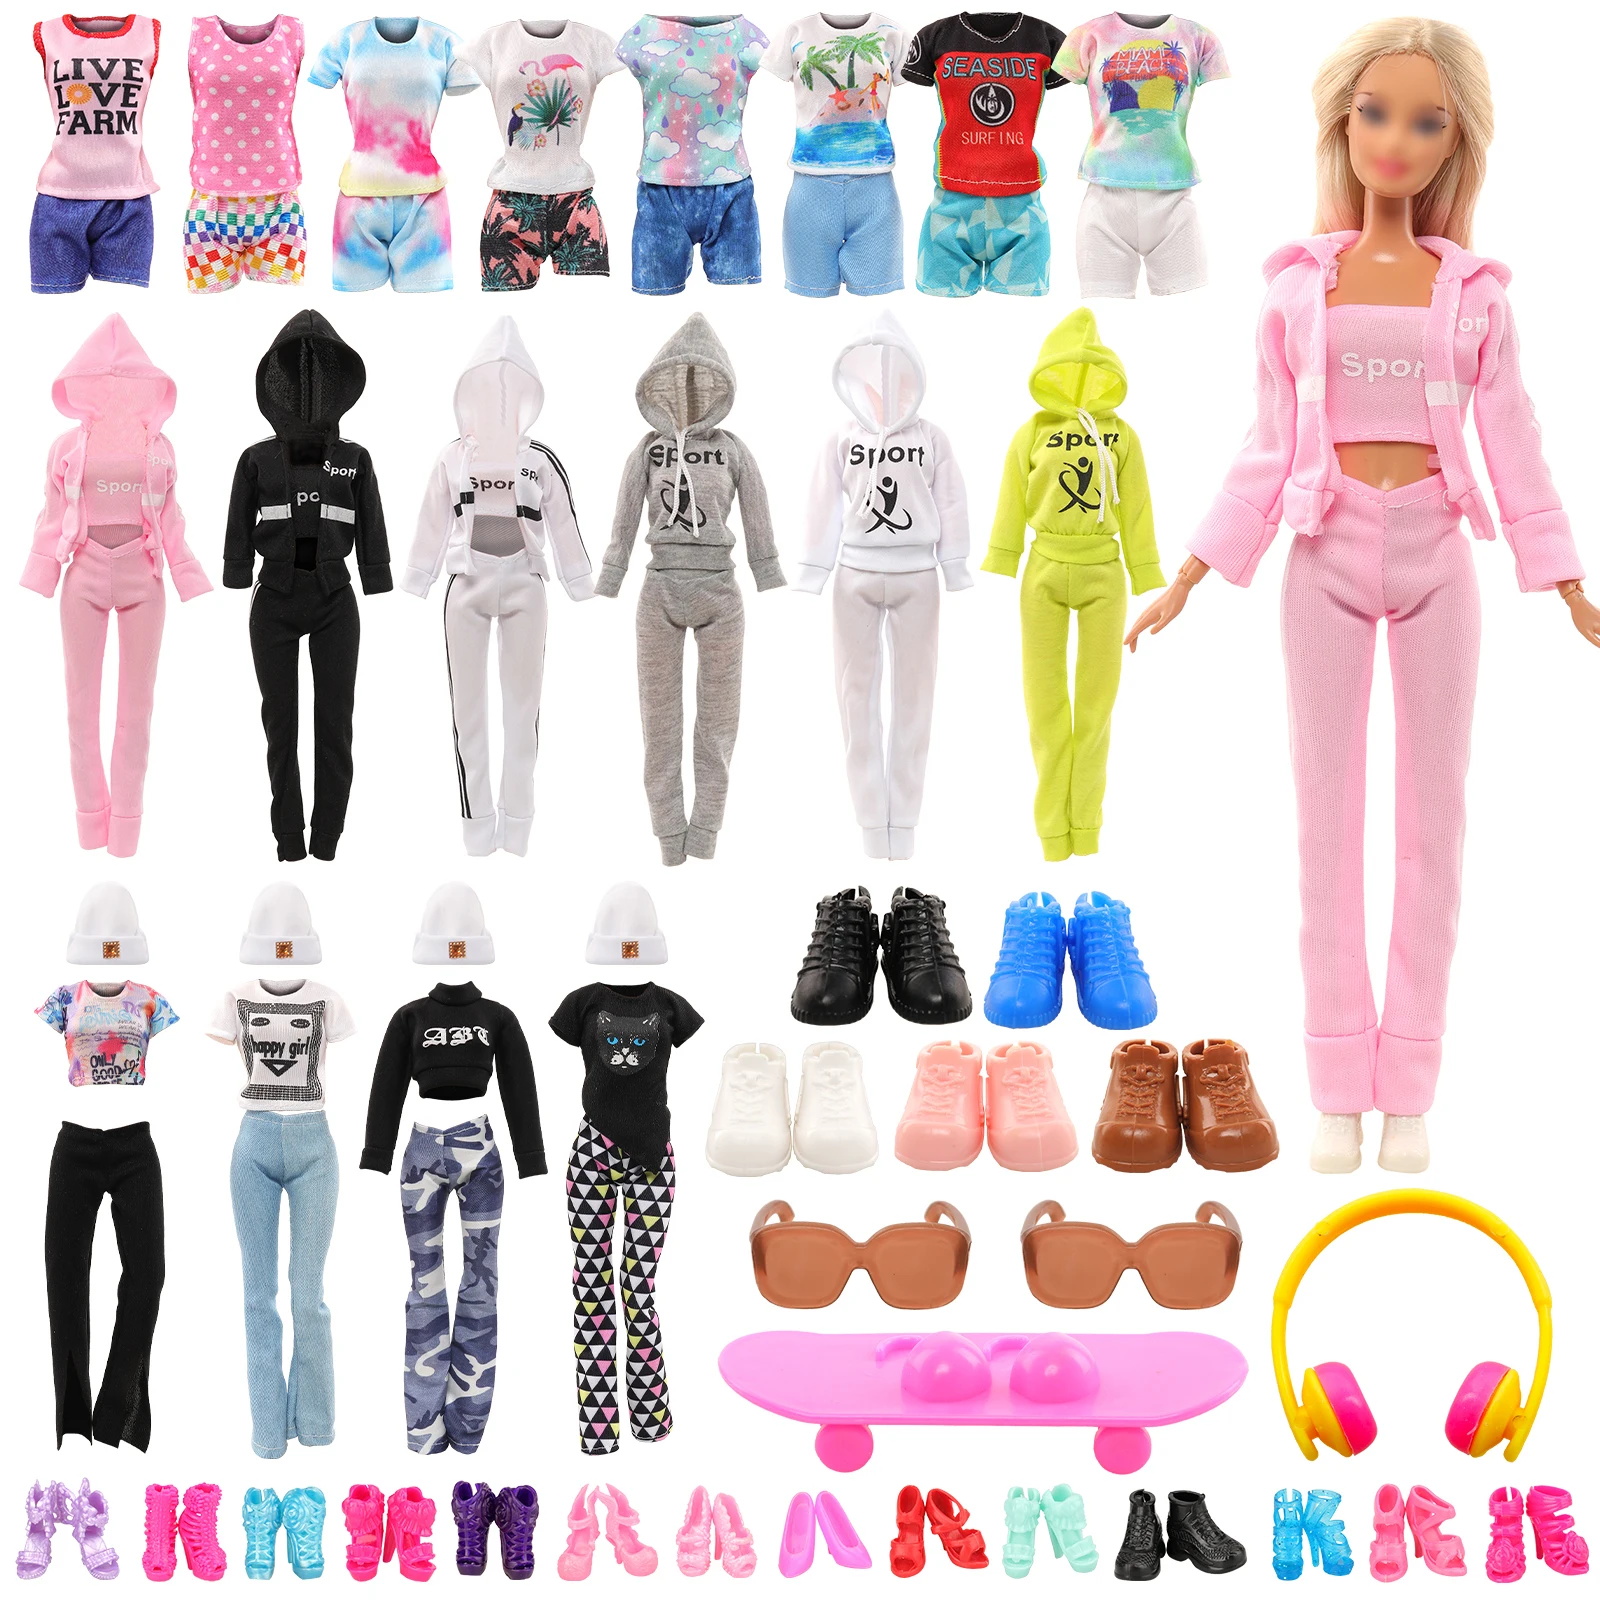 Одежда для куклы Barwa Sport Style = 1 Спортивный комплект + 1 Спортивная одежда + 2 топ-брюки, шляпы + 4 топ-шорты + 15 туфель + 1 скейтборд + 2 очки для 11,5 дюймов